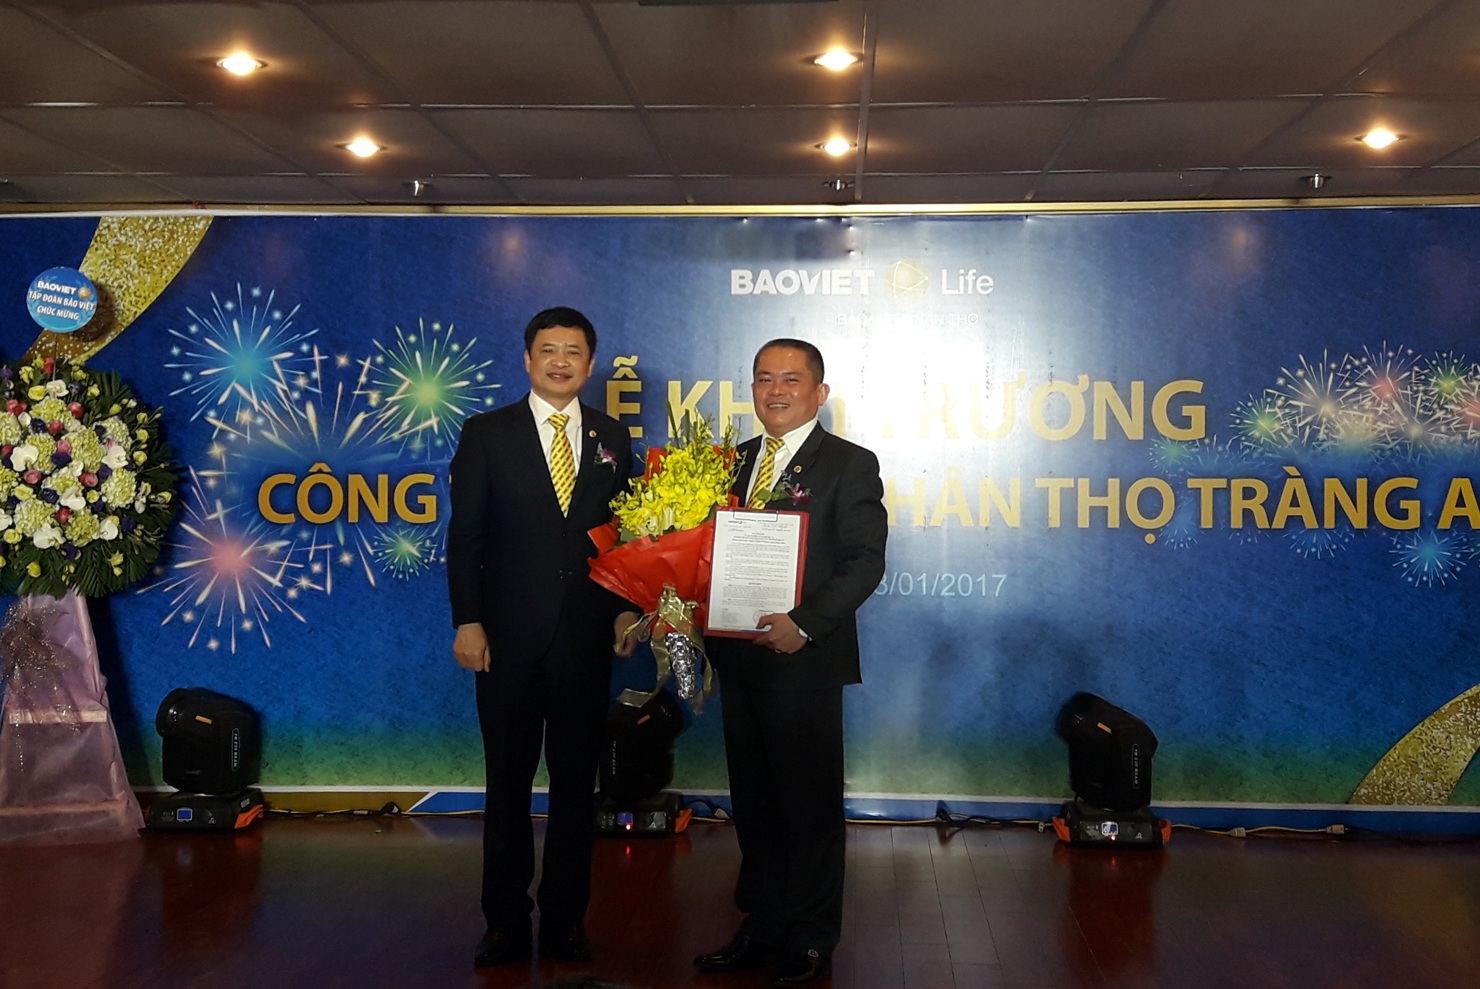 Tổng Công ty Bảo Việt Nhân thọ bổ nhiệm ông Nguyễn Viết Dũng là lãnh đạo điều hành Công ty Bảo Việt Nhân thọ Tràng An.